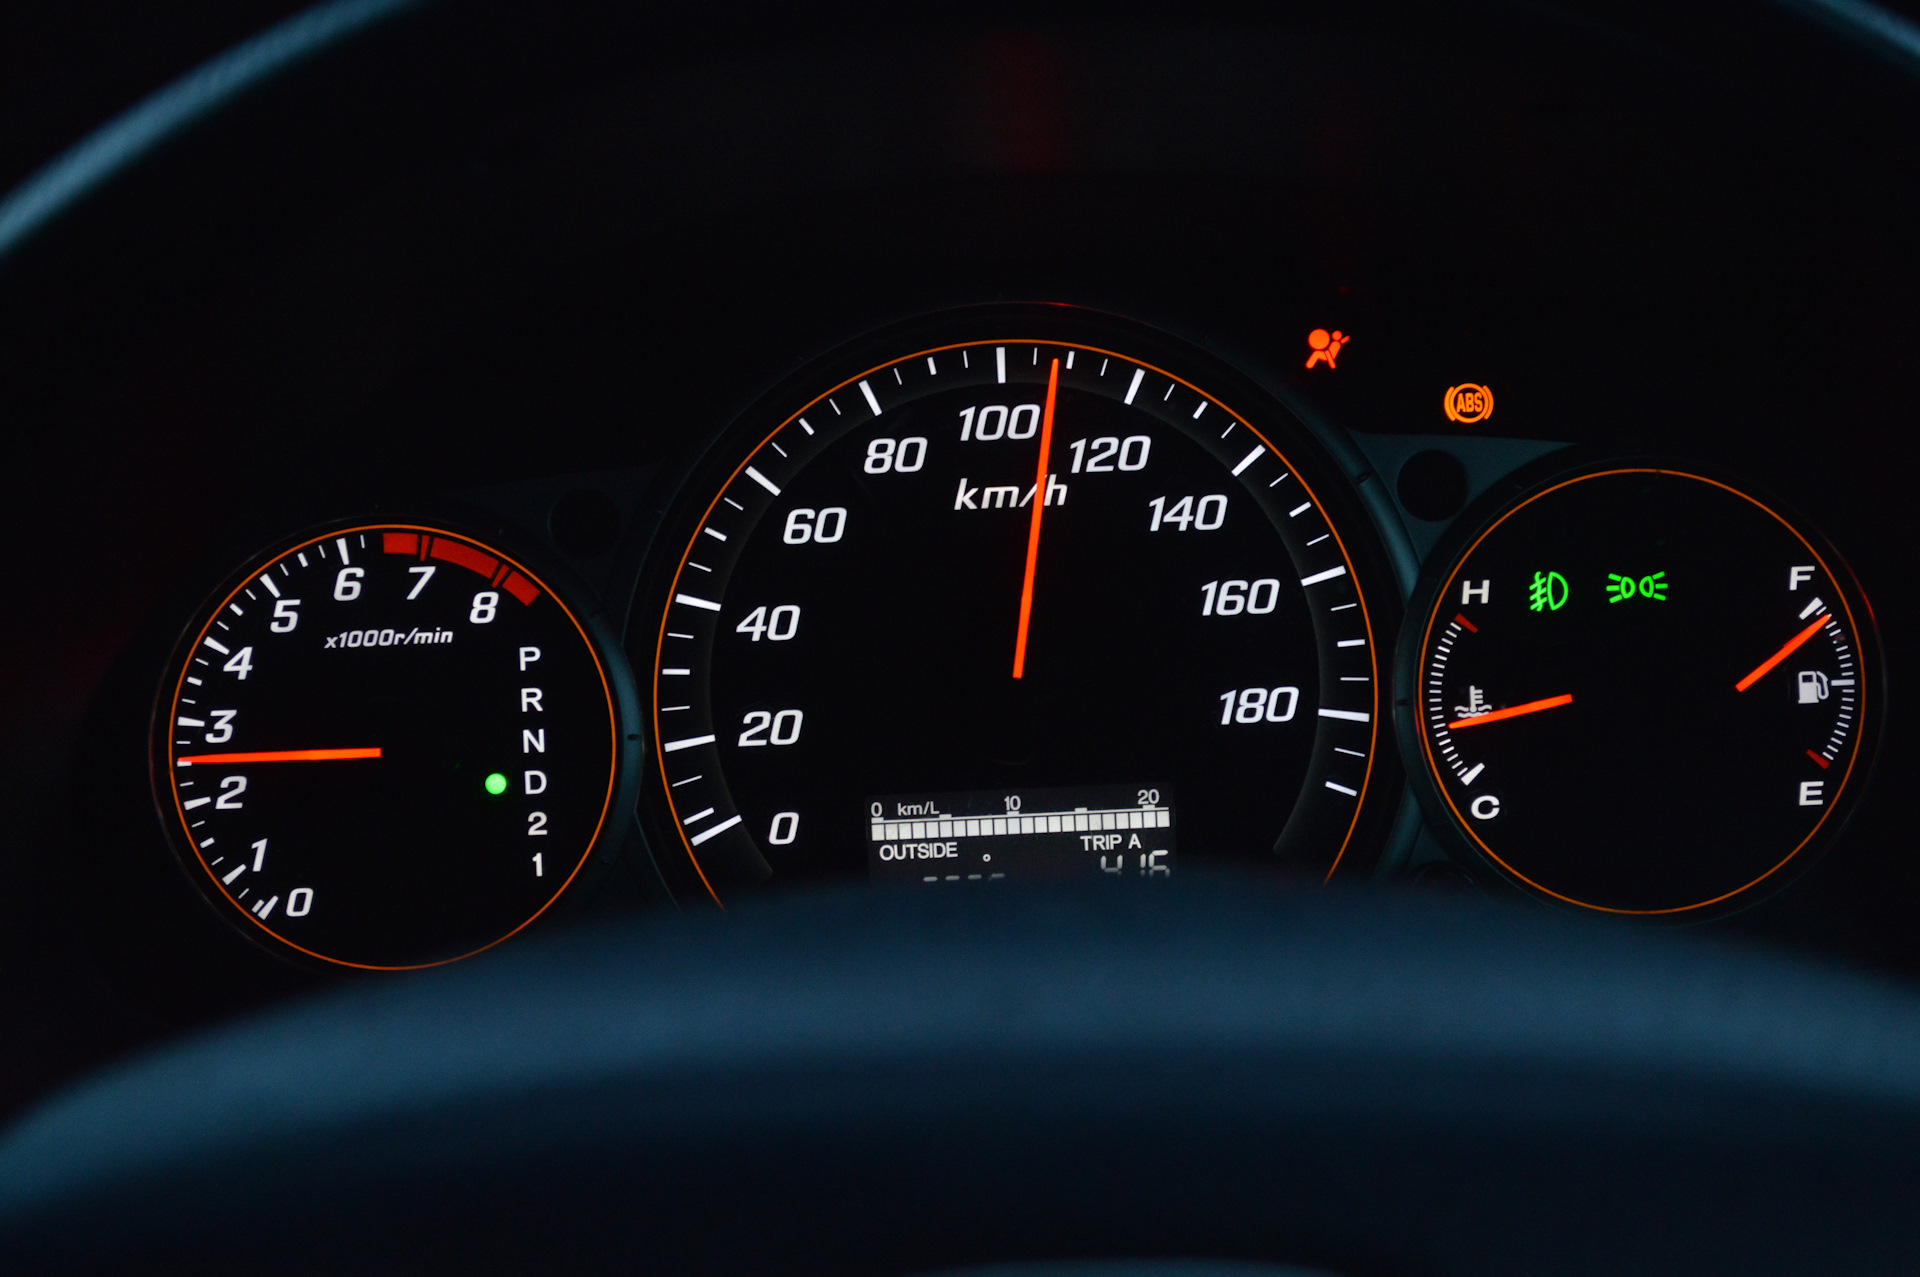 Скорость автомобиля 100км ч. Хонда Аккорд 5 поколения спидометр. Хонда Сивик 7 спидометр в милях. Сивик спидометр 5 поколение. Цивик 180 км/ч.